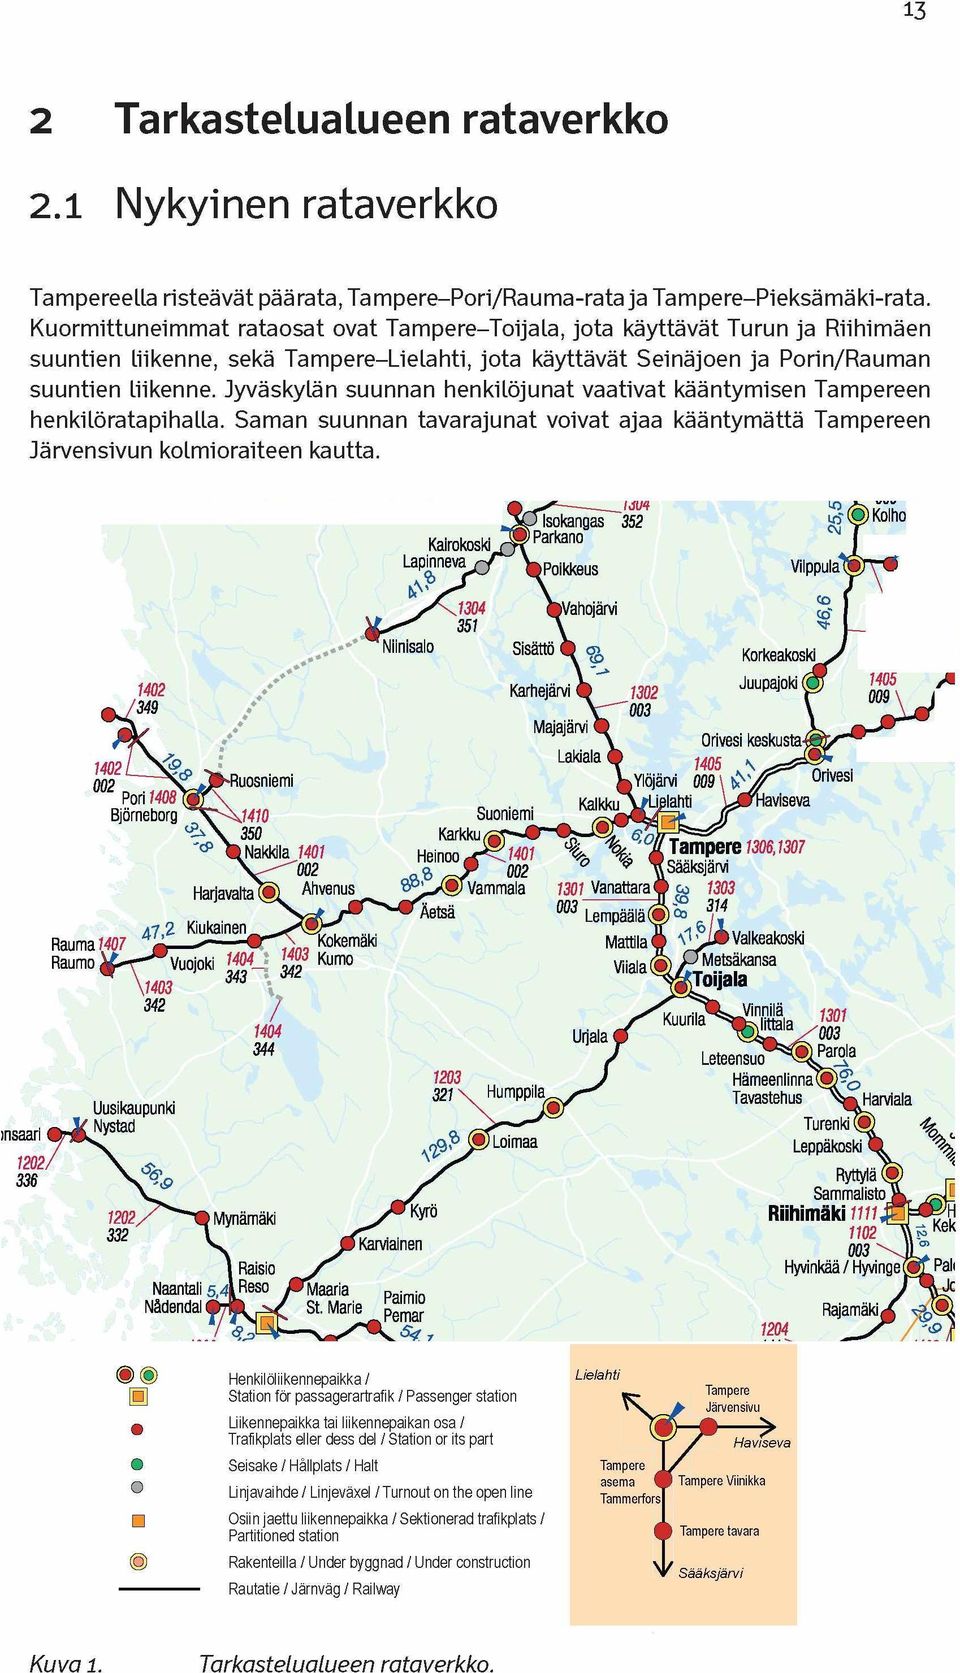 Jyväskylän suunnan henkilöjunat vaativat kääntymisen Tampereen henkilöratapihalla. Saman suunnan tavarajunat voivat ajaa kääntymättä Tampereen Järvensivun kolmioraiteen kautta.